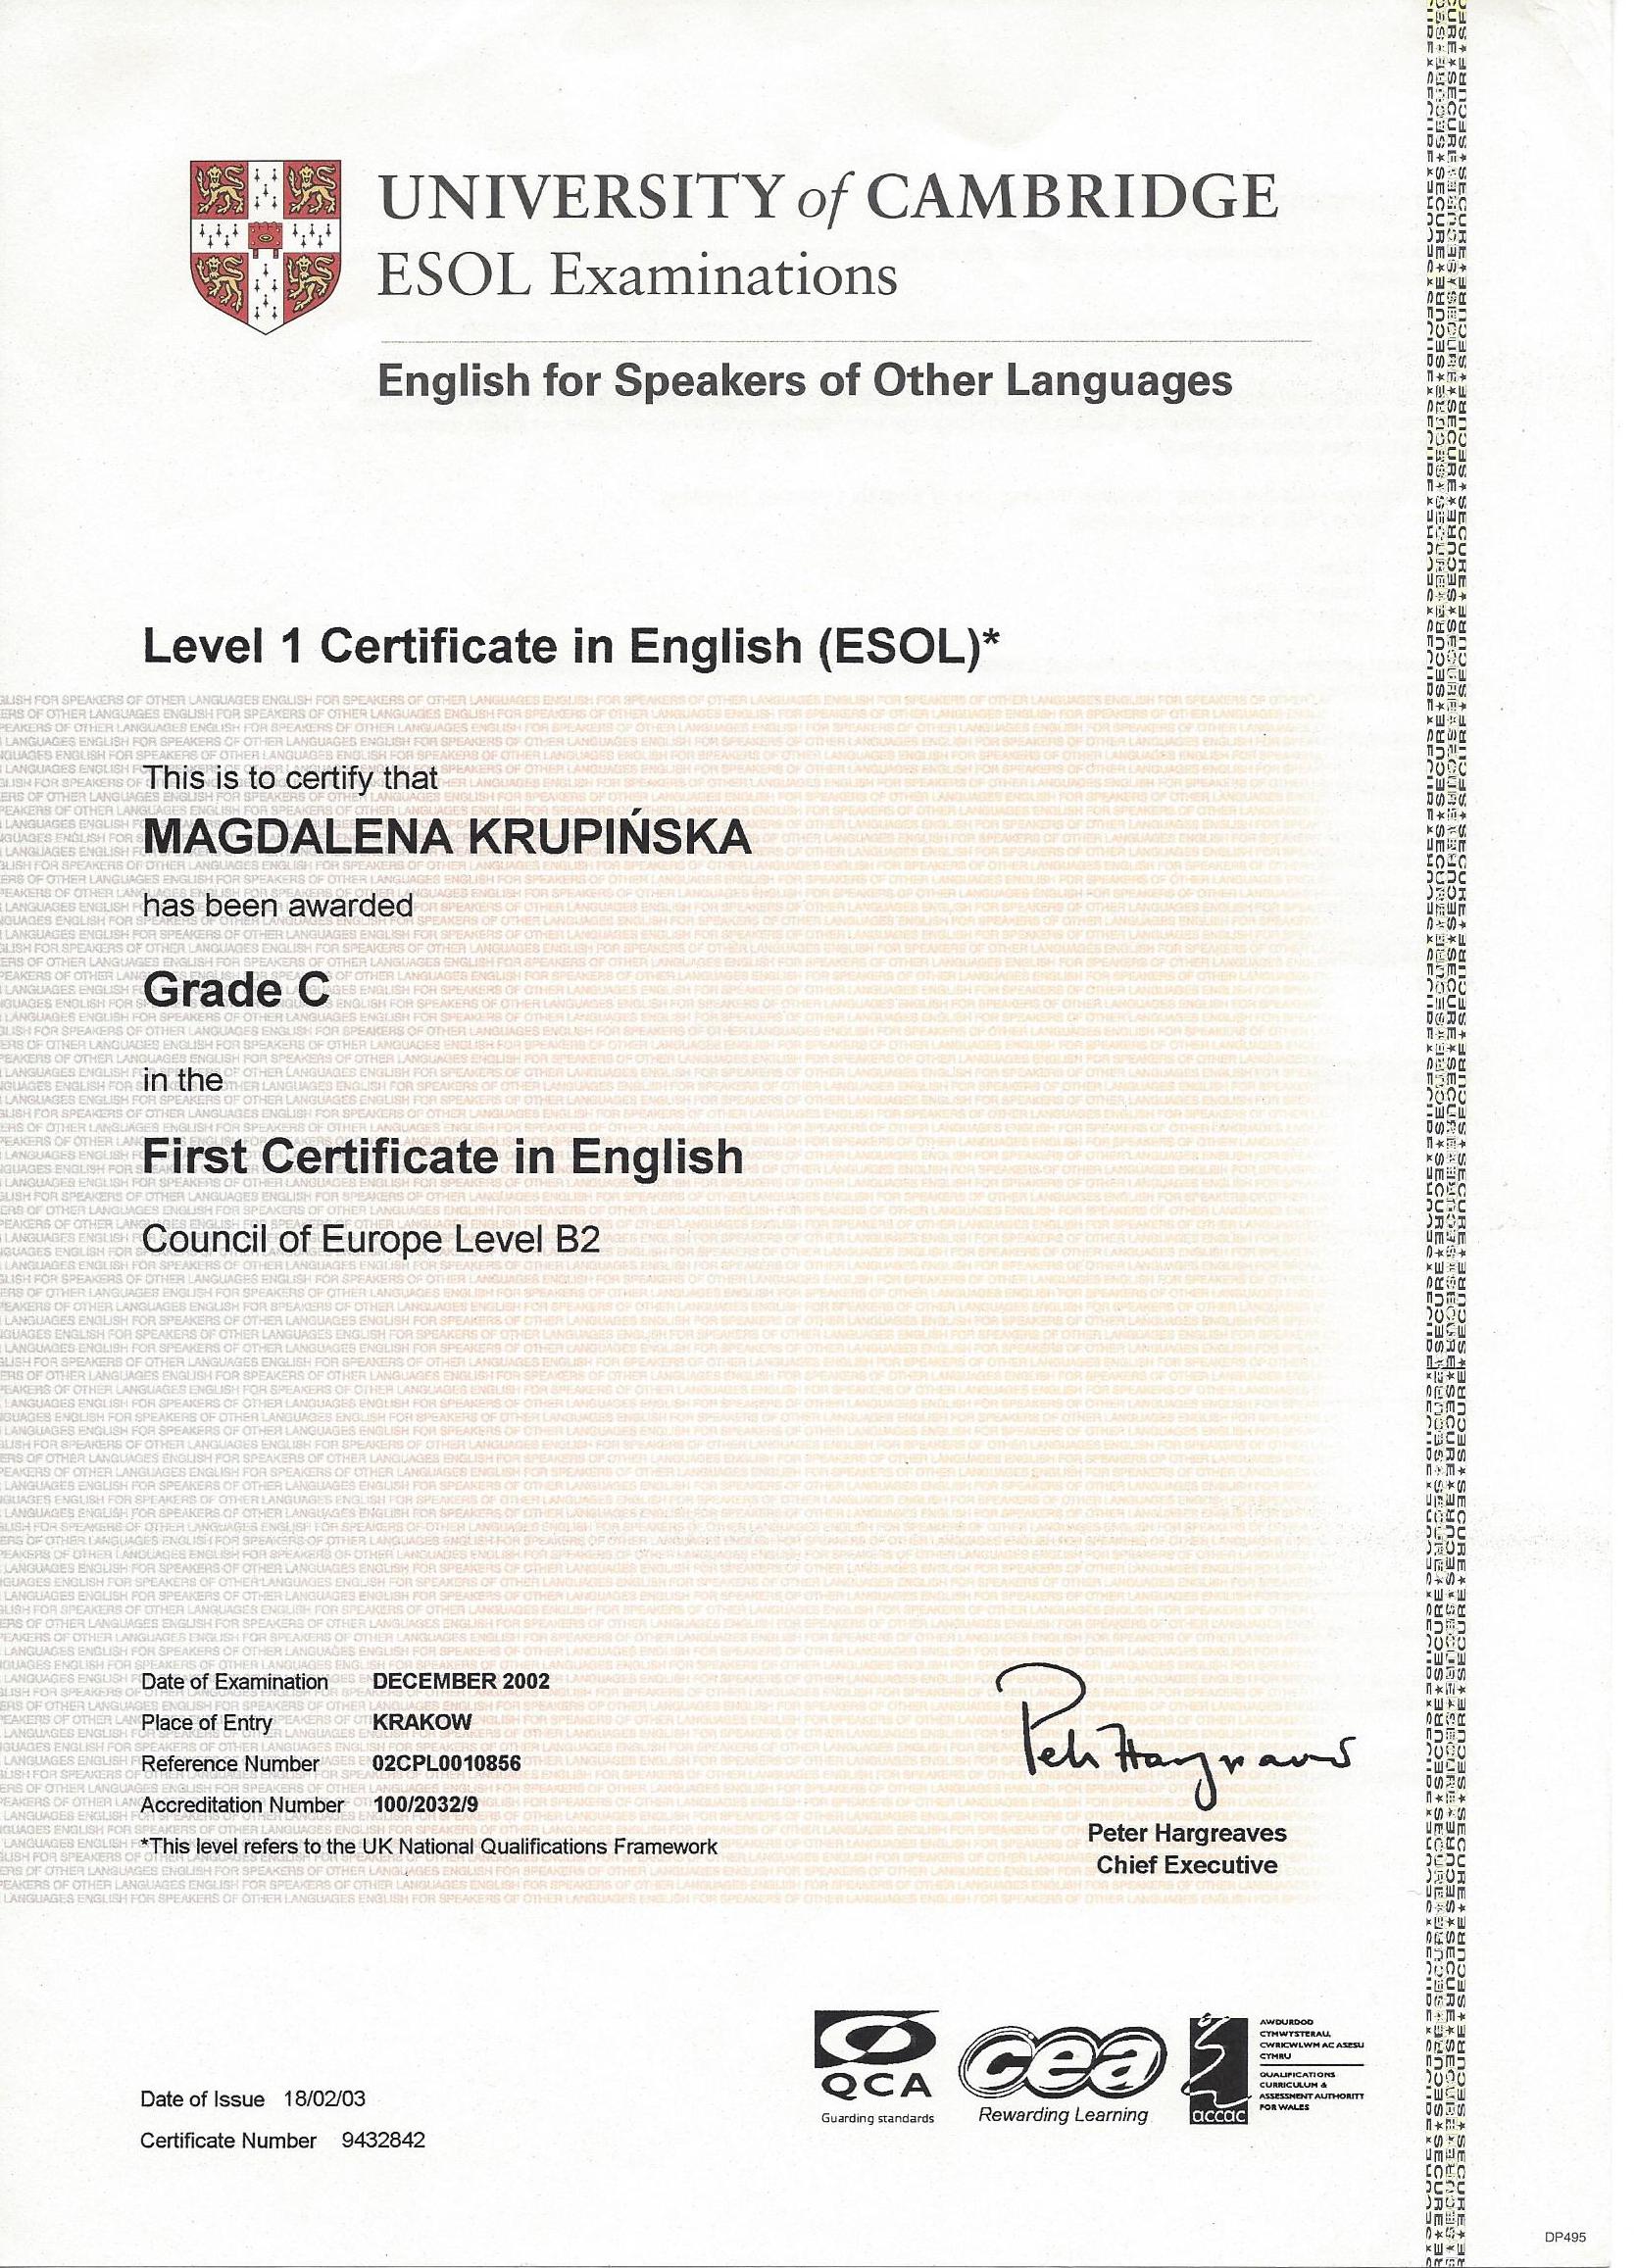 Magdalena Krupińska certyfikat 43